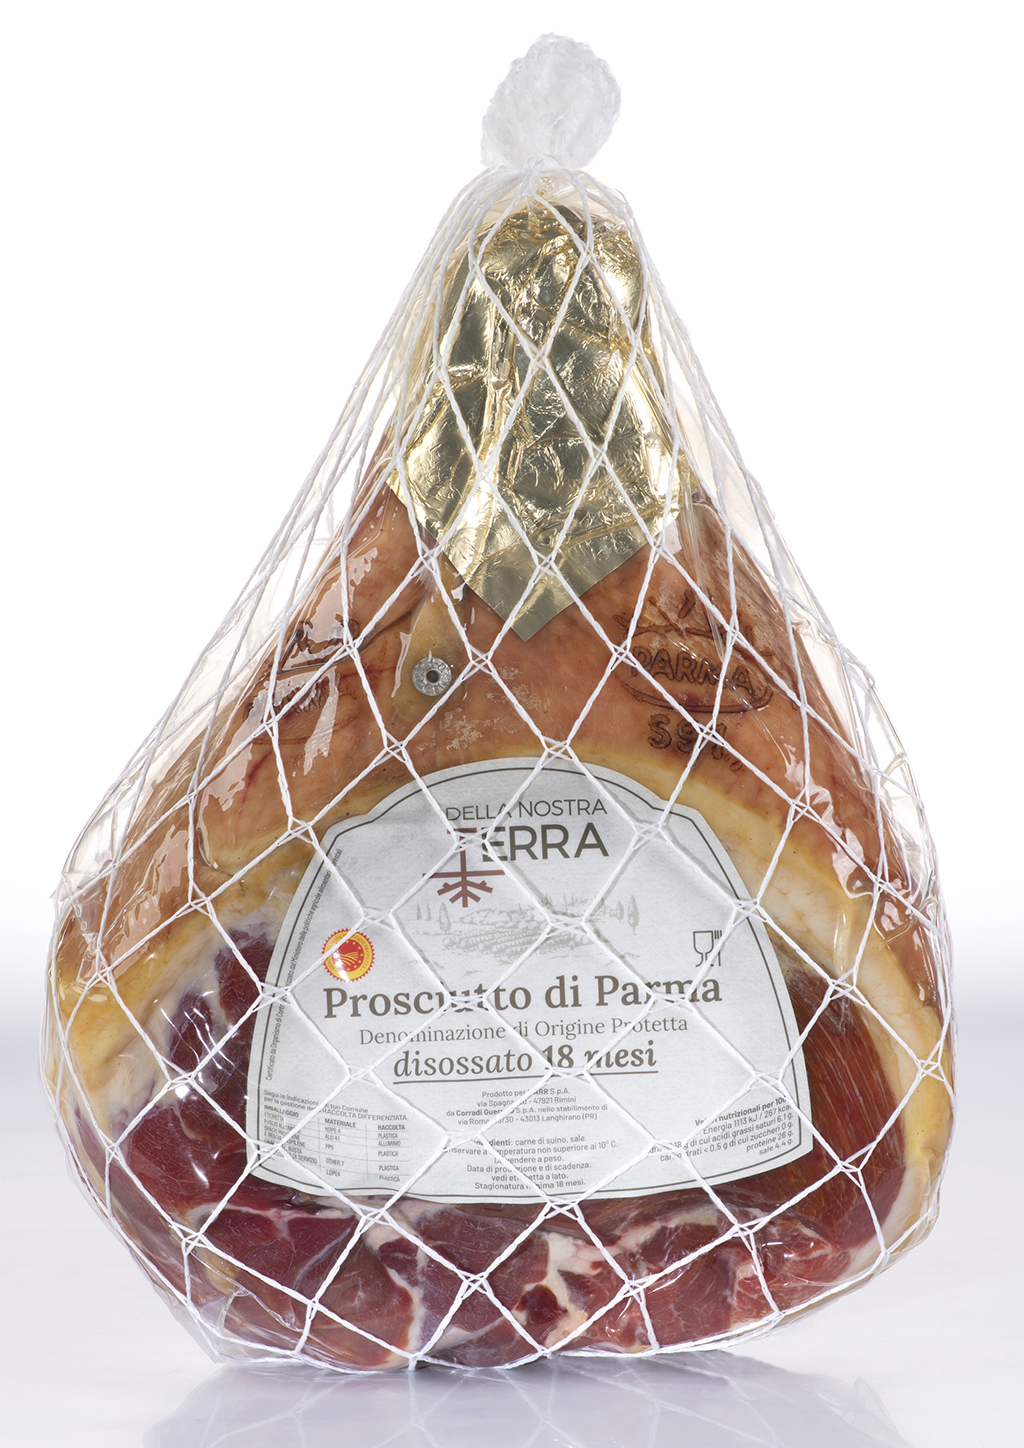 Prosciutto di Parma DOP s/osso Pressato 18 Mesi Della Nostra Terra 633304